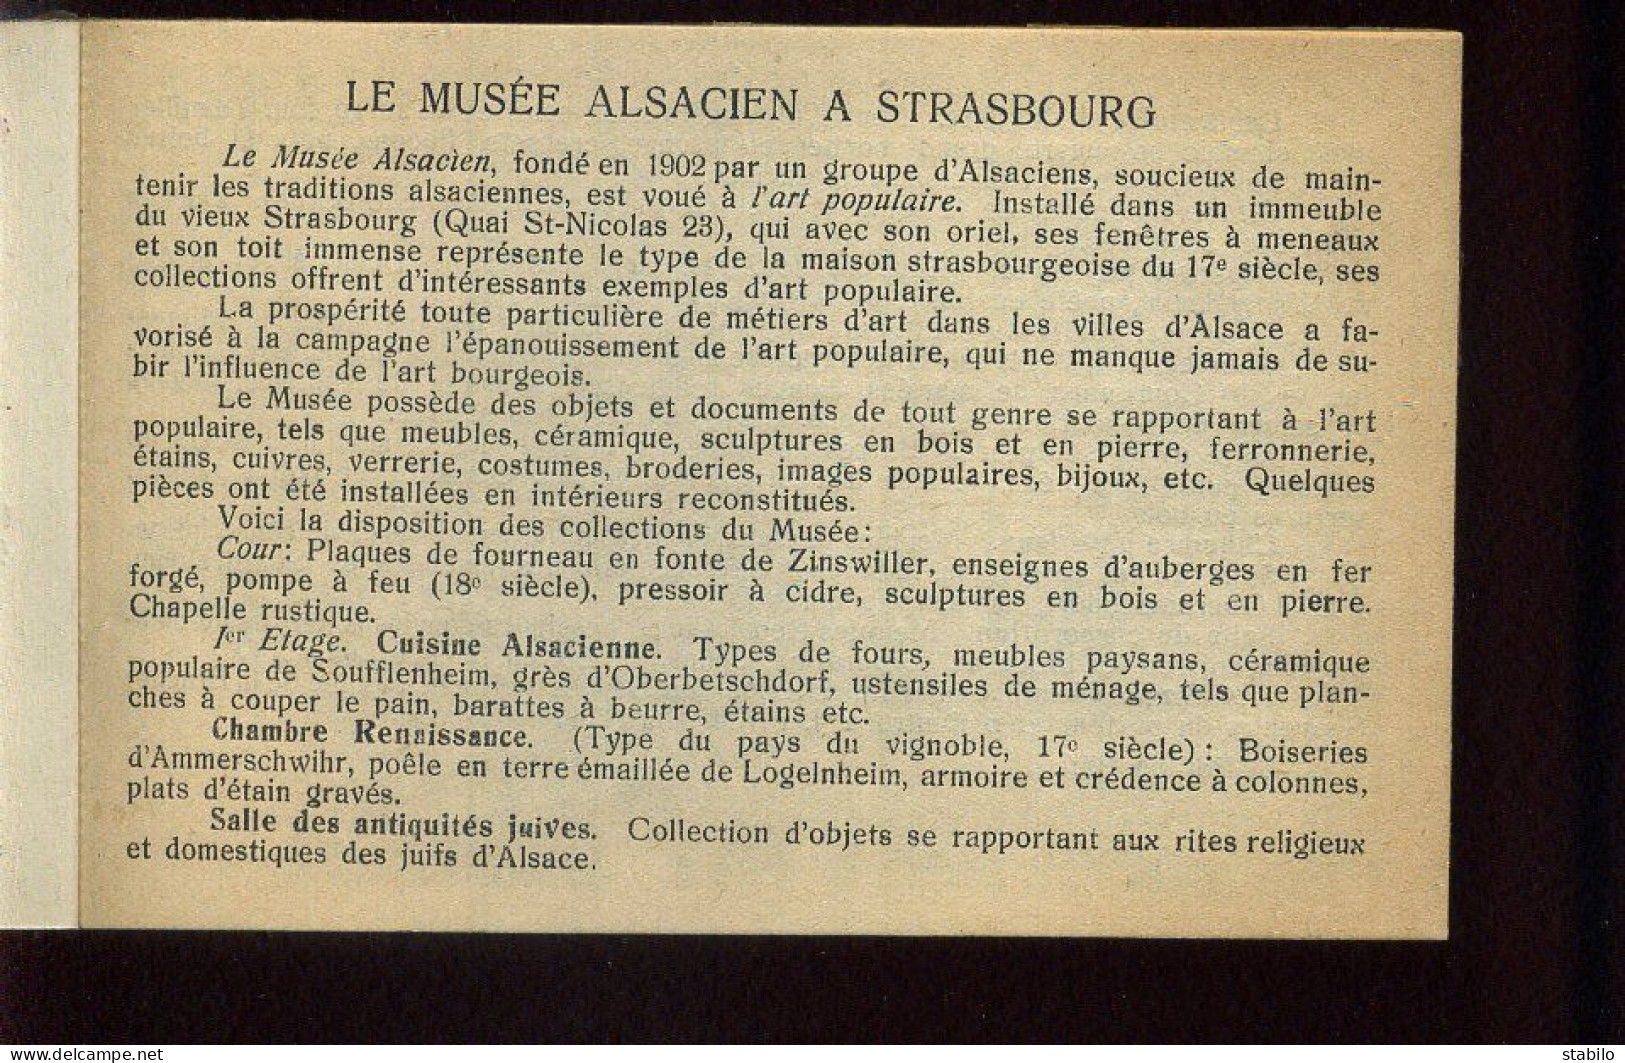 67 - STRASBOURG - MUSEE ALSACIEN, 23 QUAI ST-NICOLAS - CARNET DE 20 CARTES - Strasbourg